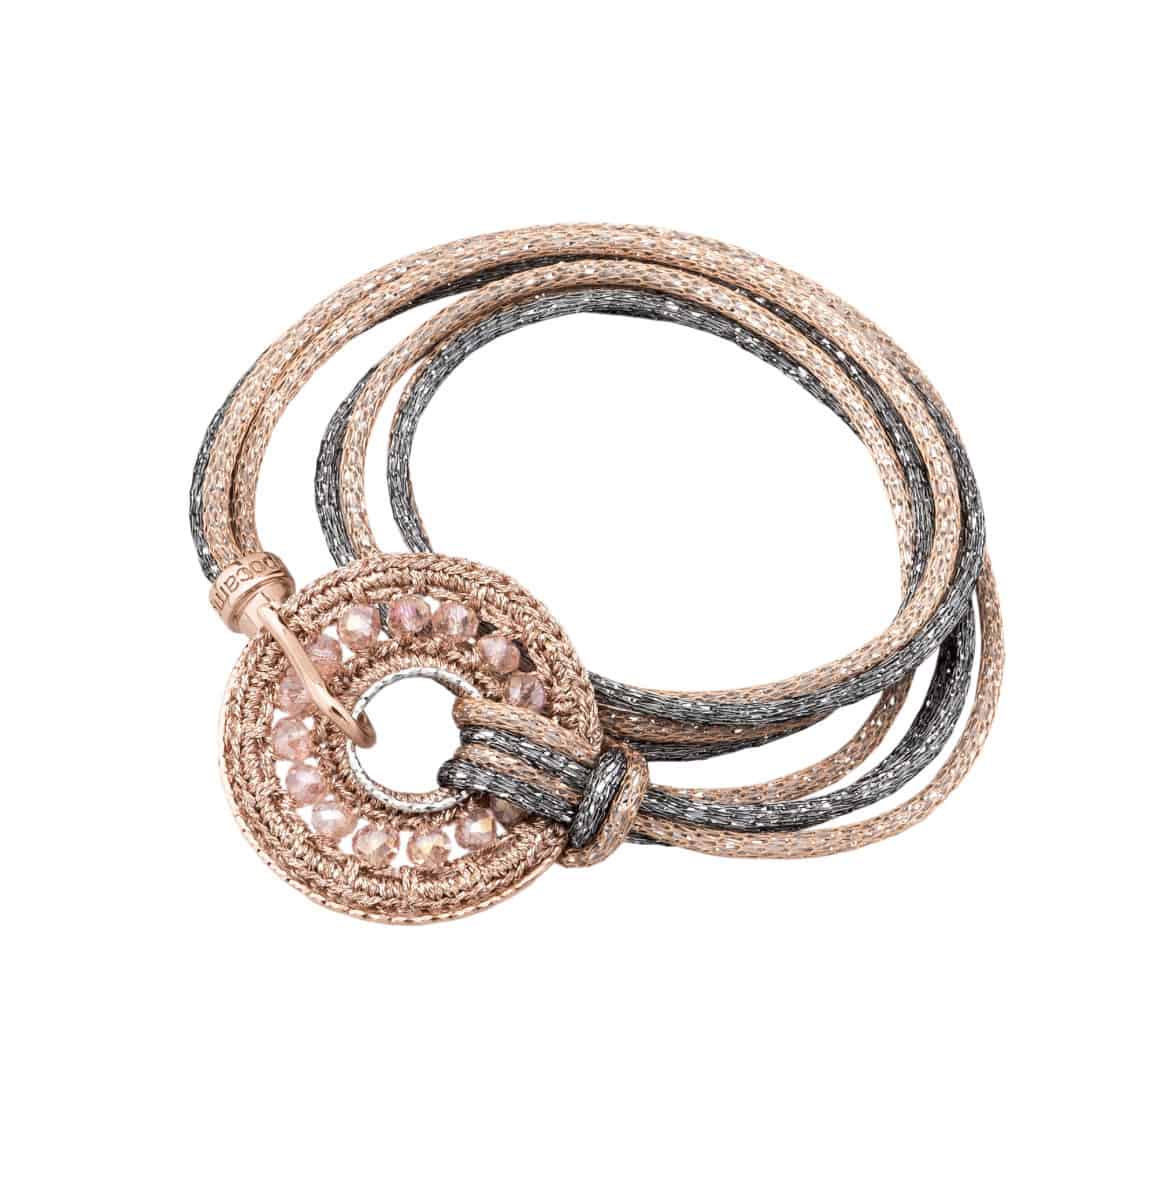 Per S.VALENTINO i romantici gioielli fatti a mano di Ippocampo Jewels